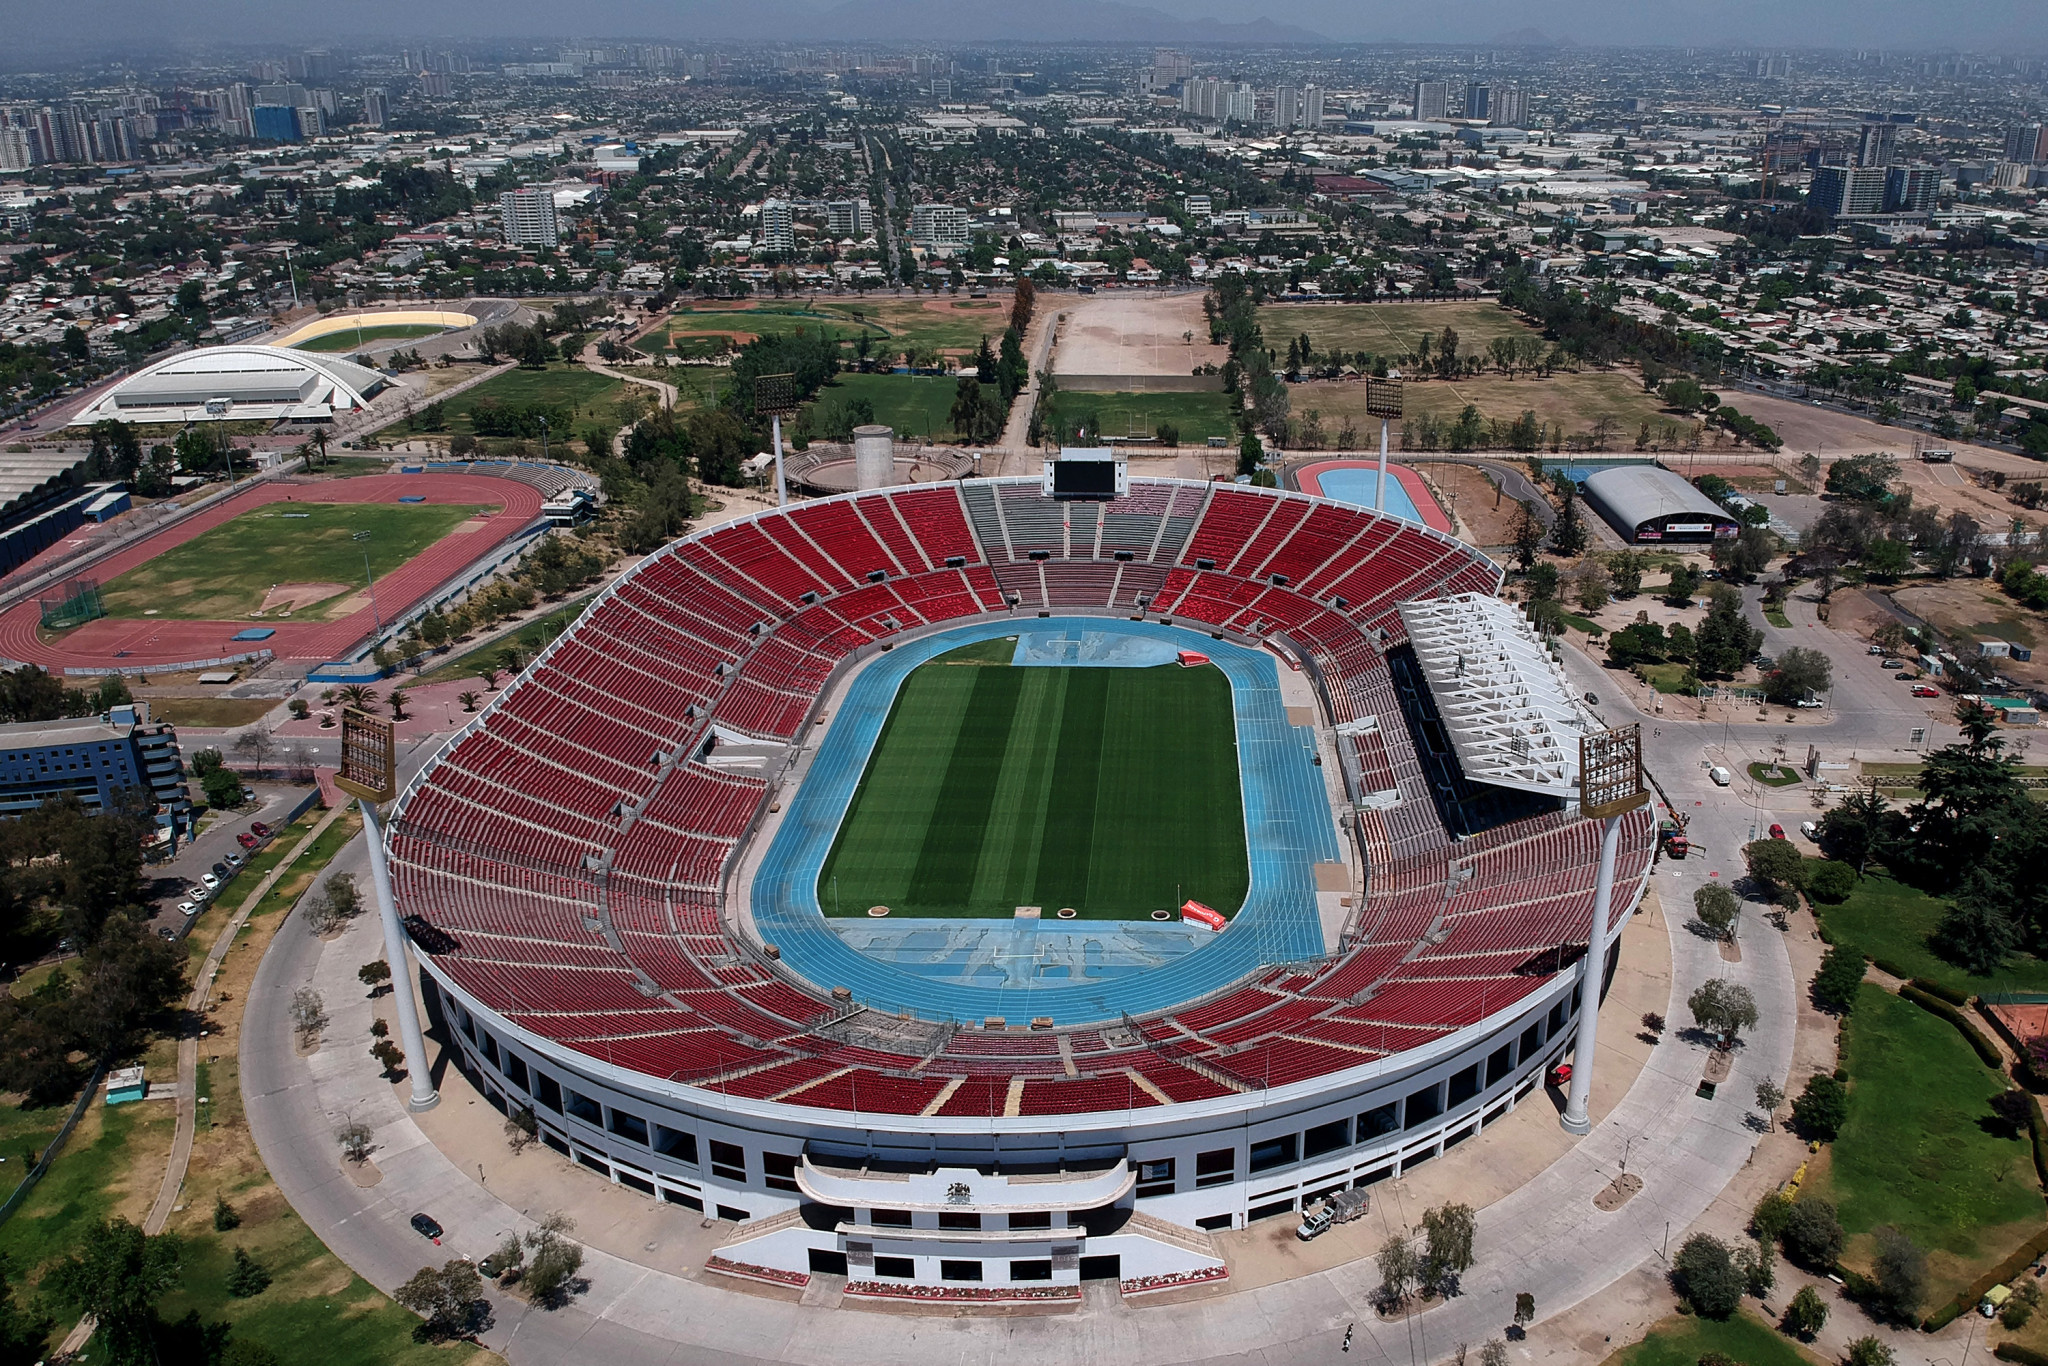 The Estadio Nacional Julio Martínez Prádanos is set to act as the main venue for Santiago 2023 ©Getty Images